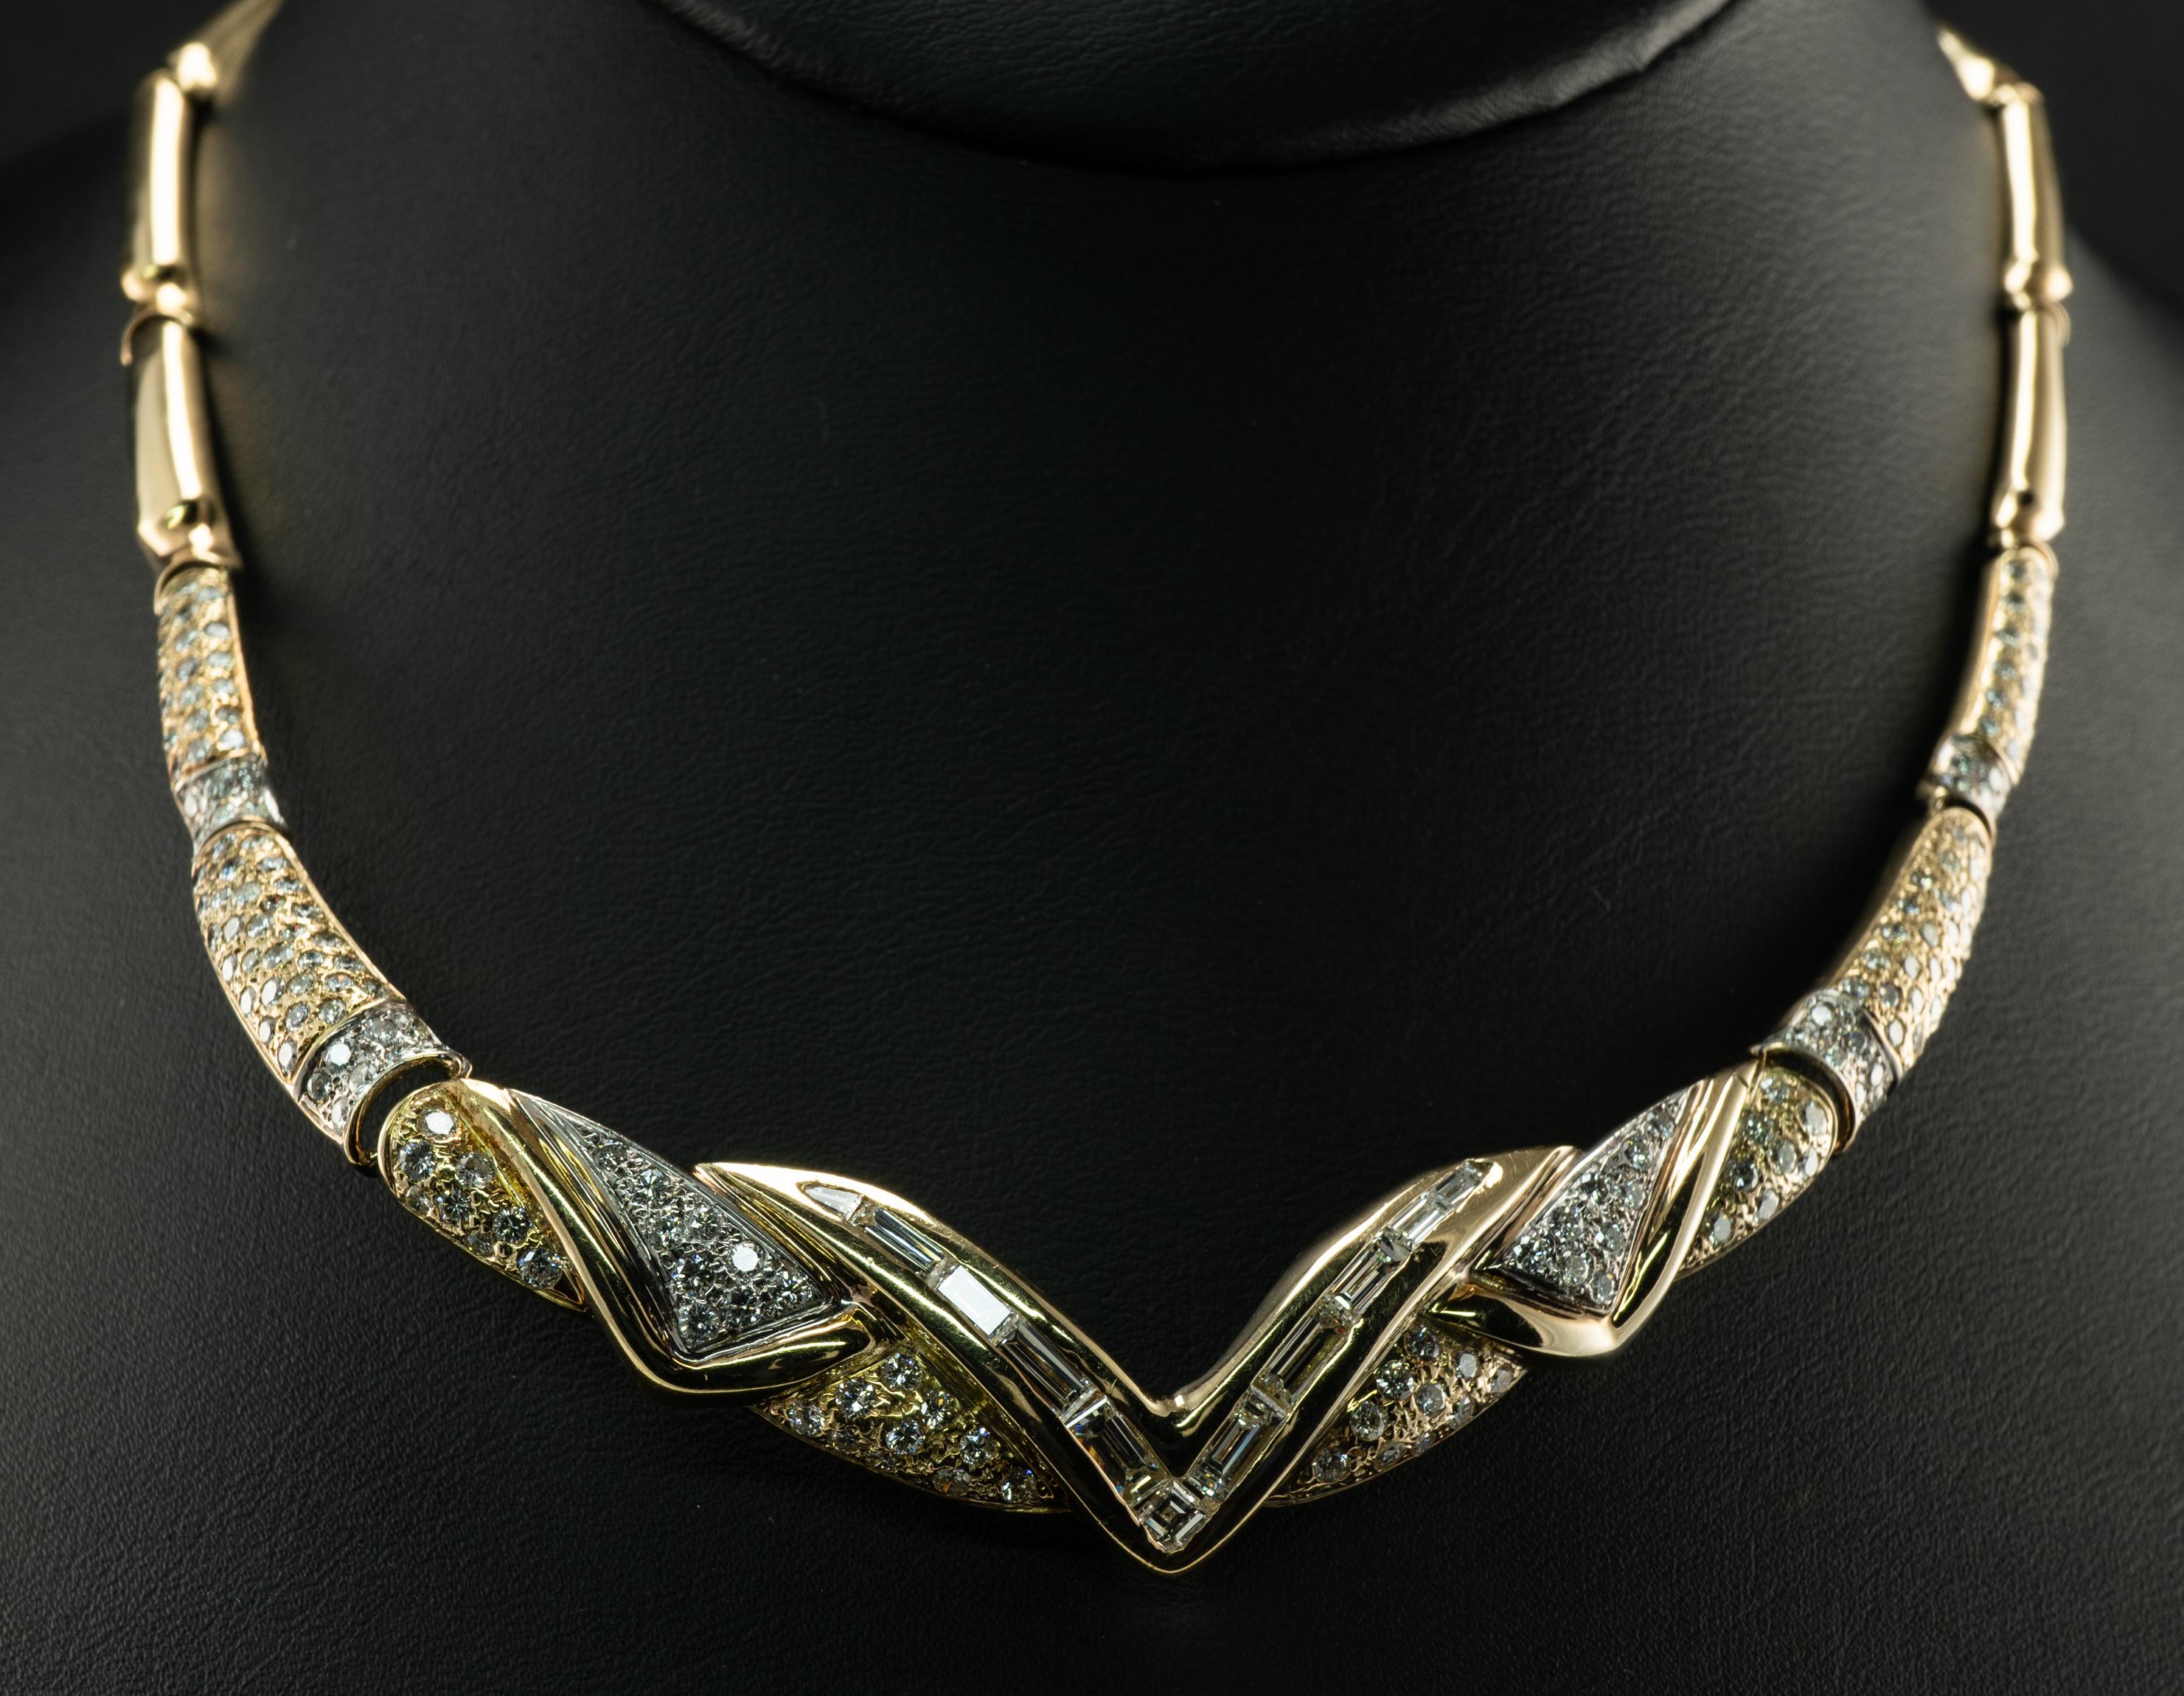 Natürlicher Diamant V Chevron Halskette 14K Gold 4,38 cttw Baguettes rund Italien

Diese wunderschöne Vintage-Halskette ist aus massivem 14-karätigem Gelbgold gefertigt.
In der Mitte der V-förmigen Halskette befinden sich 12 Diamantbaguetten und ein